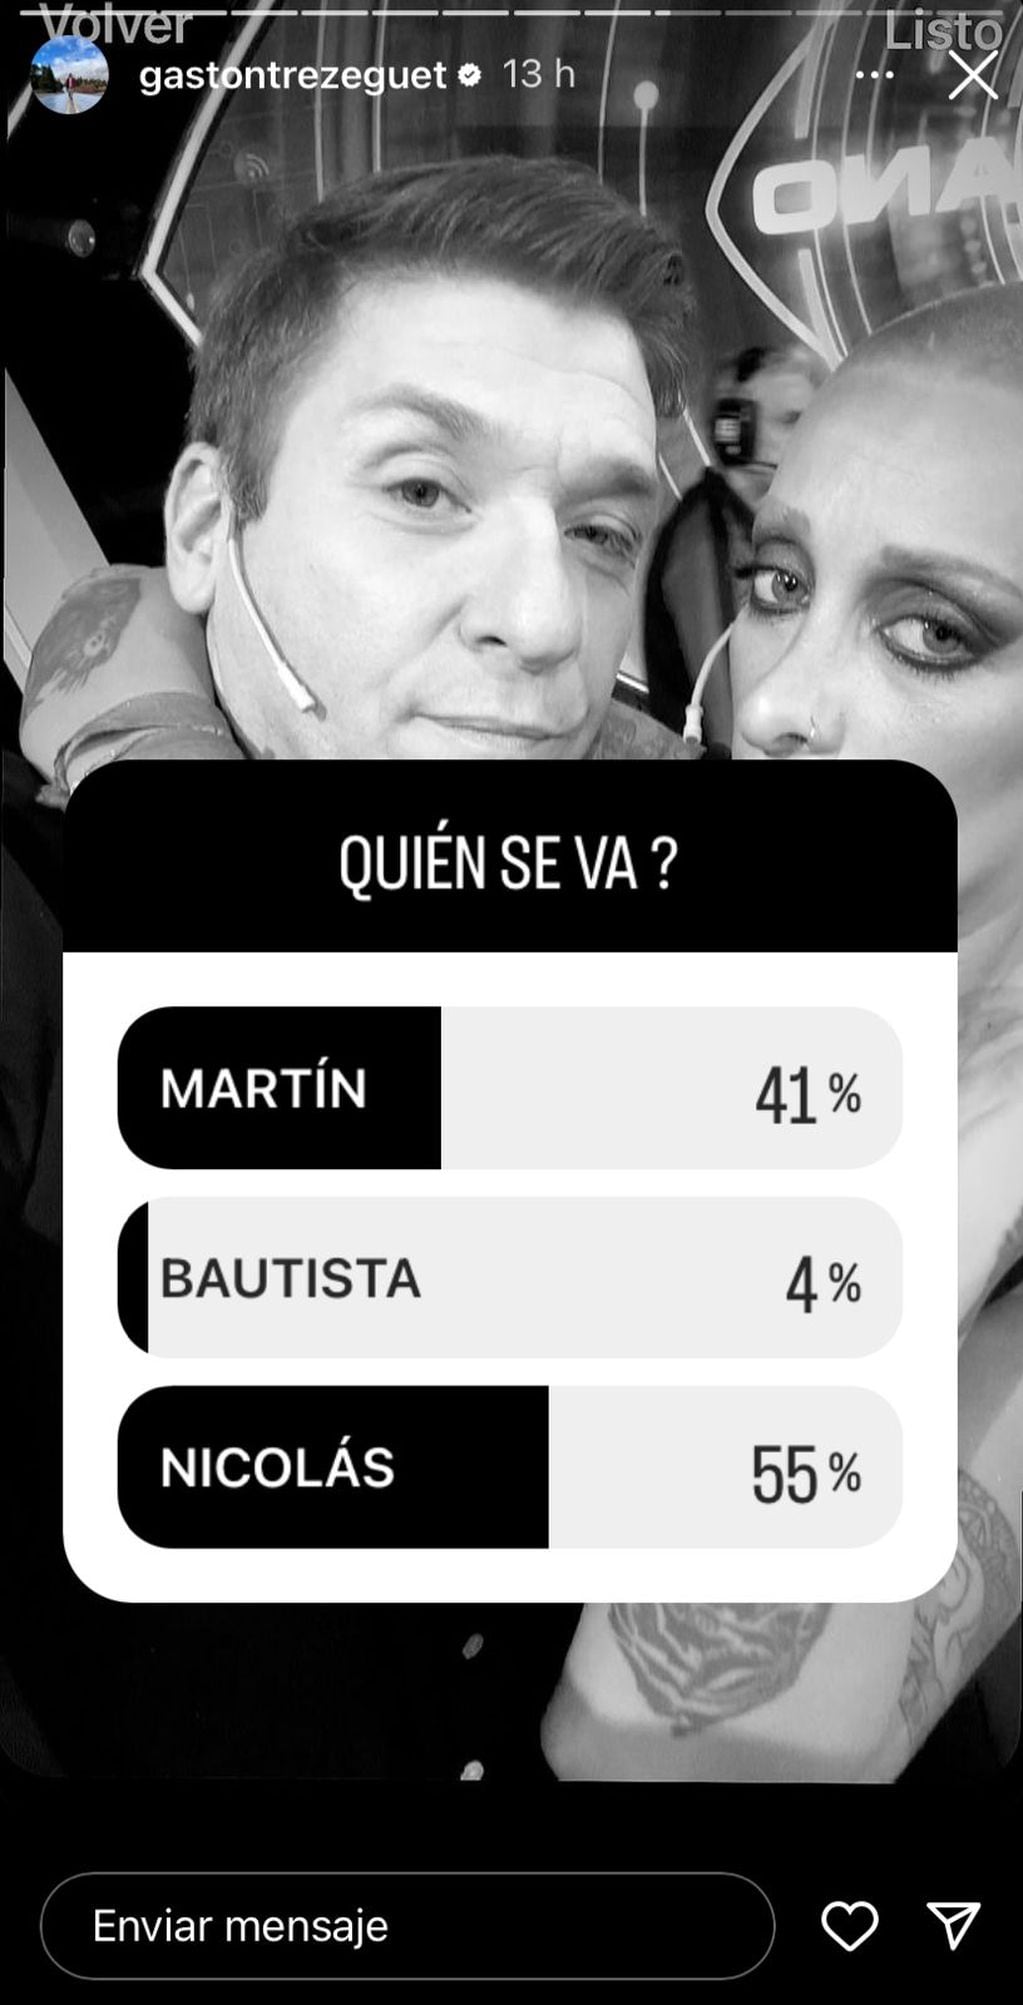 Las encuestas dan por eliminado a Nicolás de Gran Hermano.